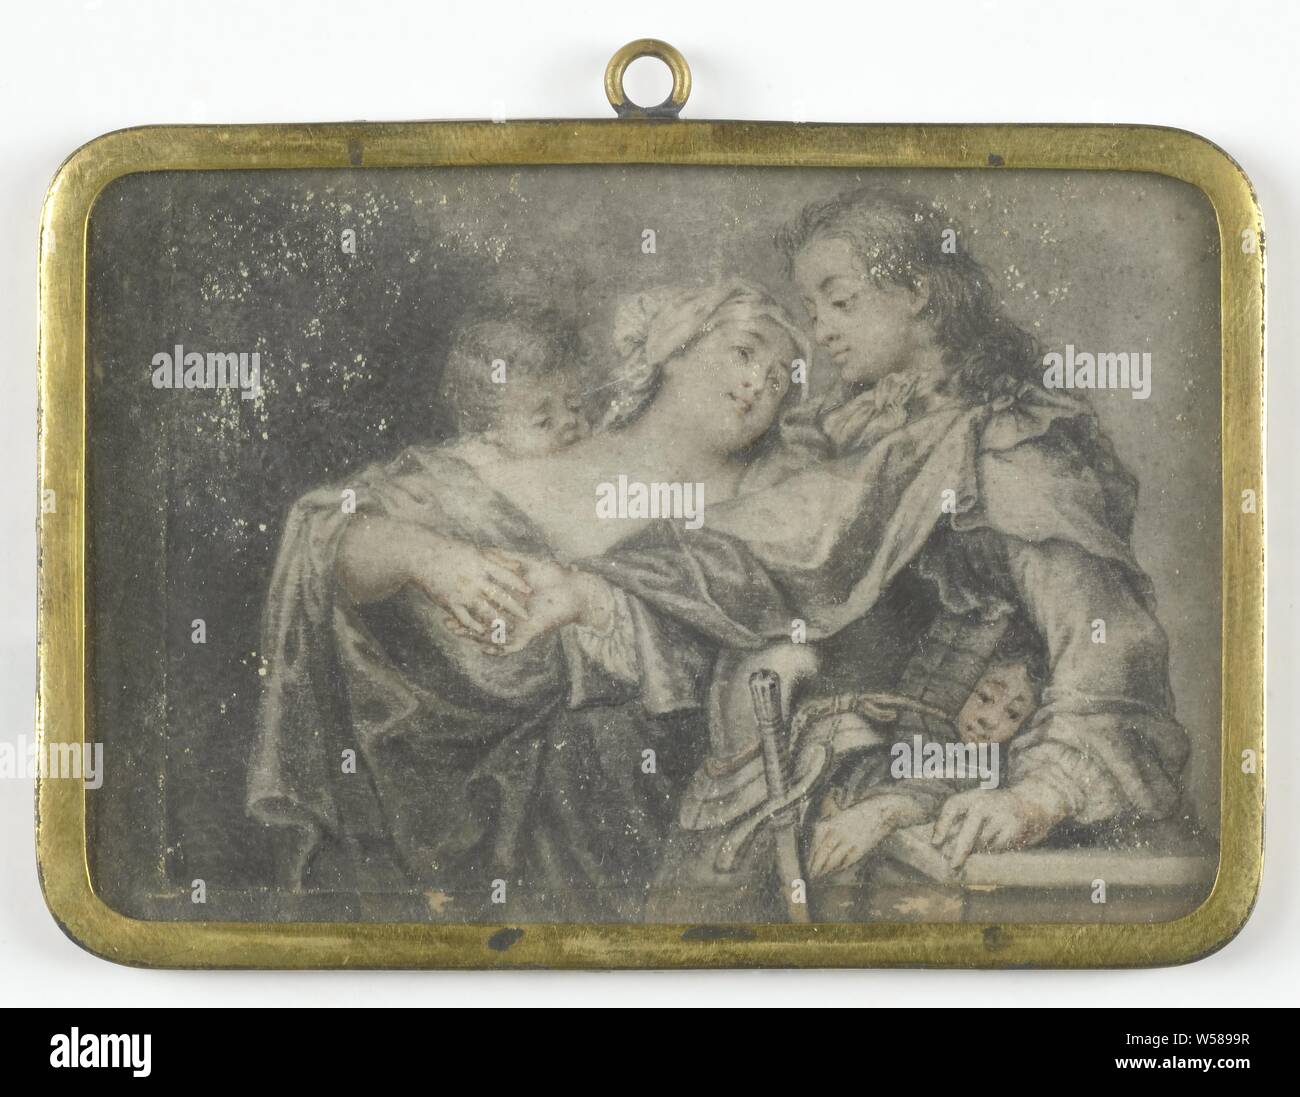 Une jeune femme alors qu'un guerrier de distraire l'un de ses enfants lui vole, une jeune femme de distraire un guerrier alors que l'un de ses enfants lui vole. Une partie de la collection de figurines, vol qualifié, vol, influence néfaste de la femme "femmes fatales", Carl Gustav Klingstedt (attribué à), France, 1670 - 1734, parchemin (animale), métal, H 5,2 cm × w 7,2 cm h 6,1 cm × w 8 cm × 0,6 cm d Banque D'Images